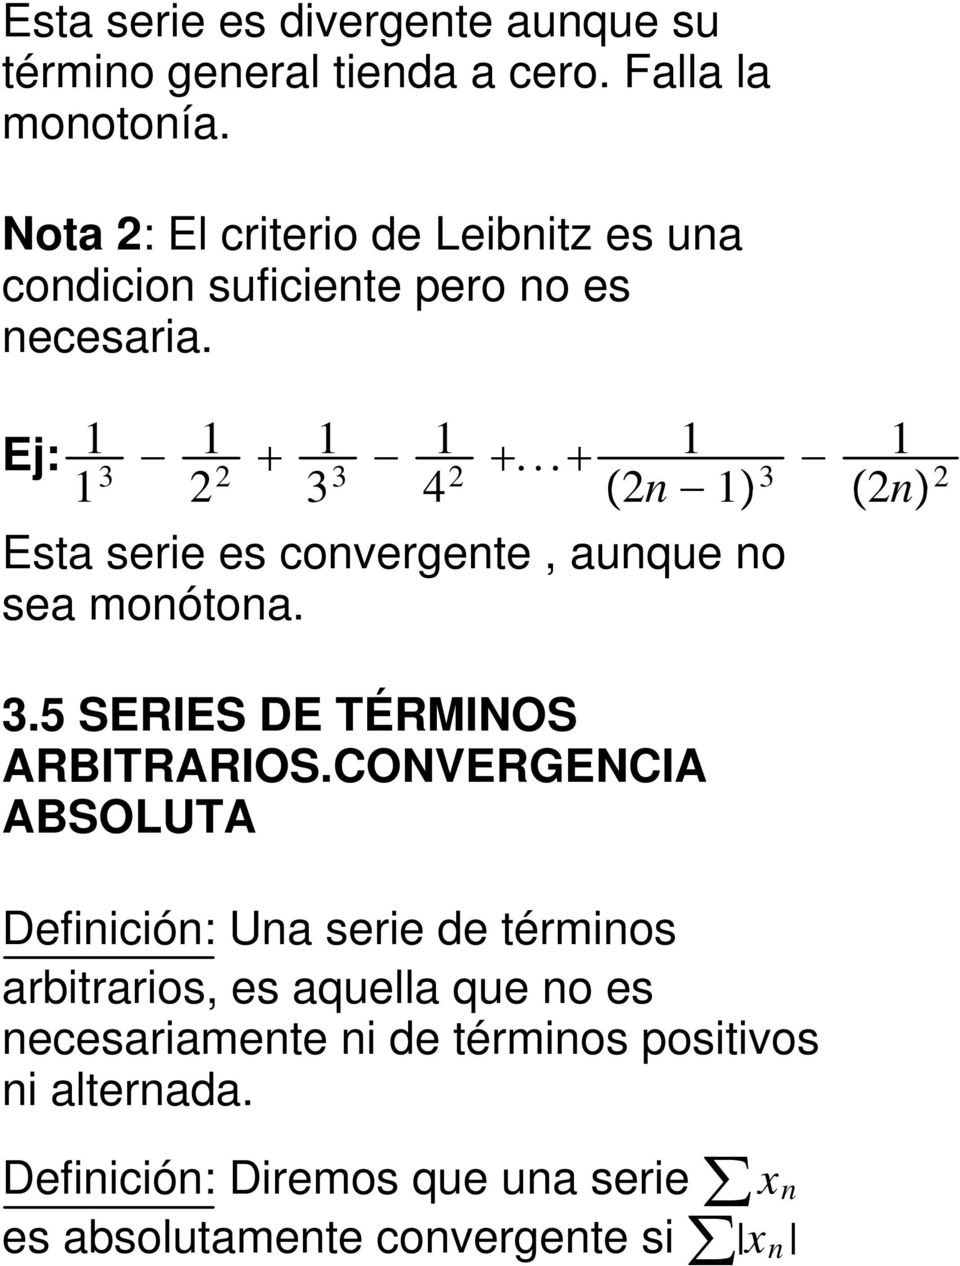 .. 1 2n 1 3 1 2n 2 Esta serie es convergente, aunque no sea monótona. 3.5 SERIES DE TÉRMINOS ARBITRARIOS.